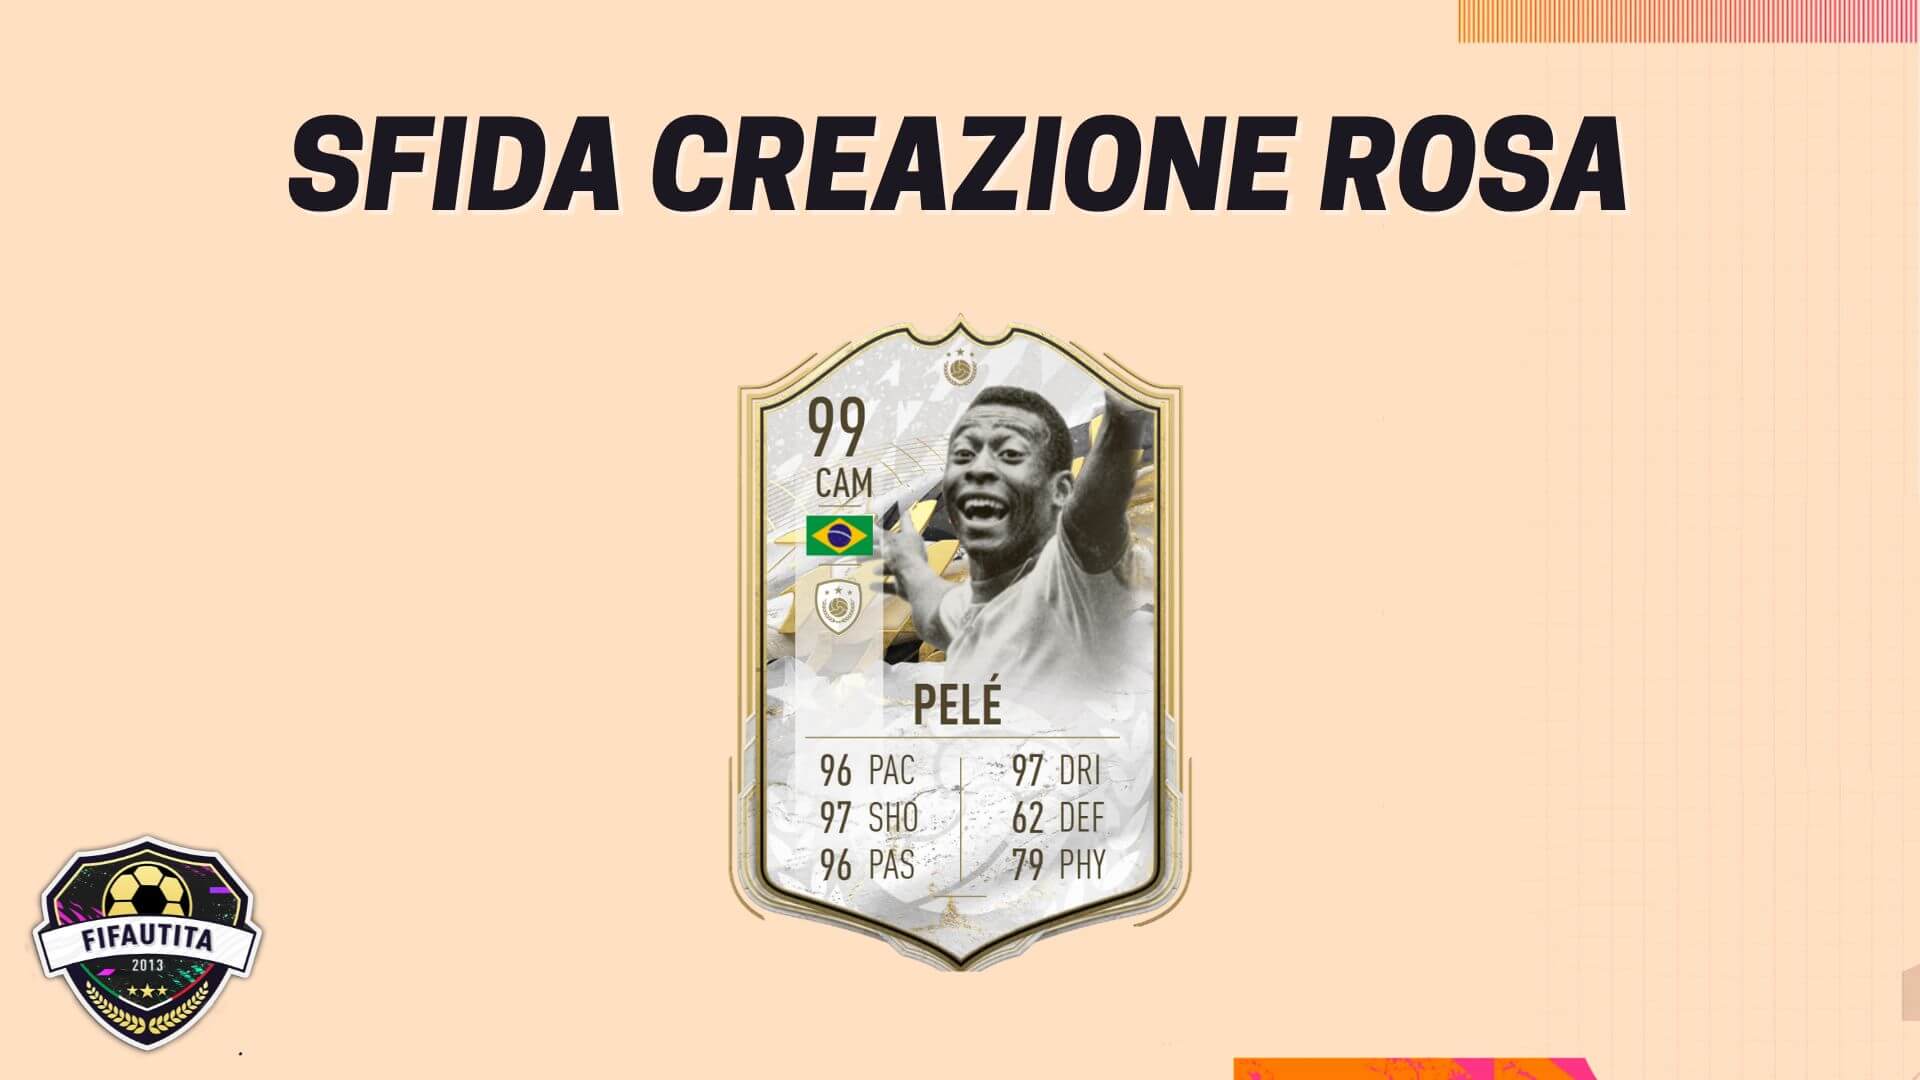 Fifa 22 Sfida Creazione Rosa Pelé Prime Moments Icon Sbc